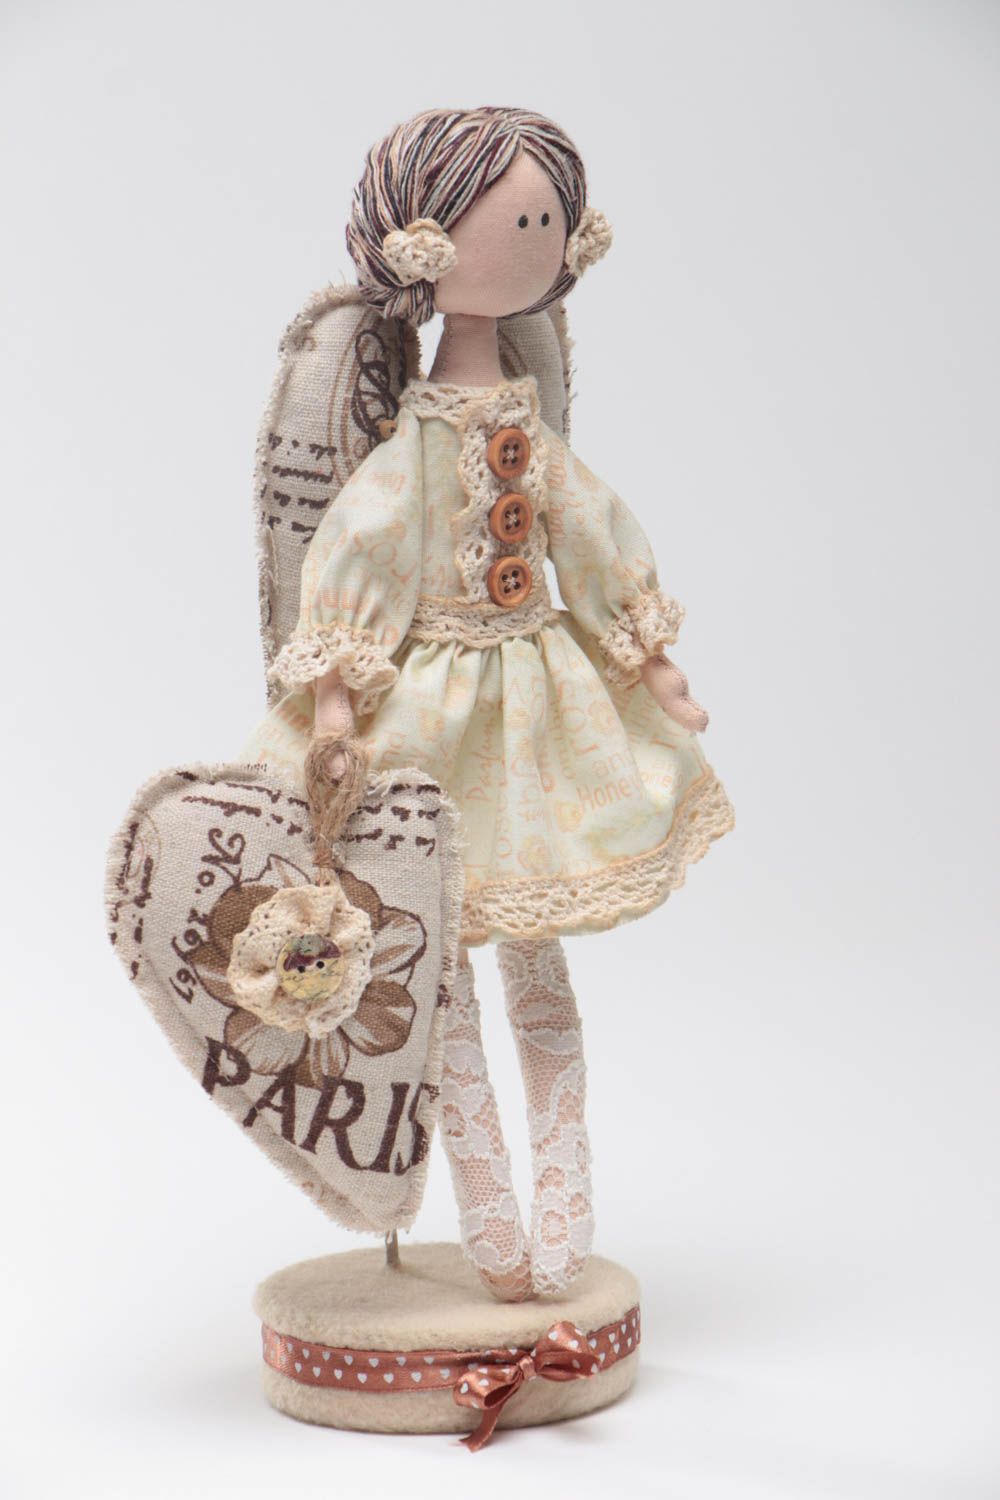 Авторская кукла из ткани на подставке красивая ручной работы из хлопка и льна Англел фото 2